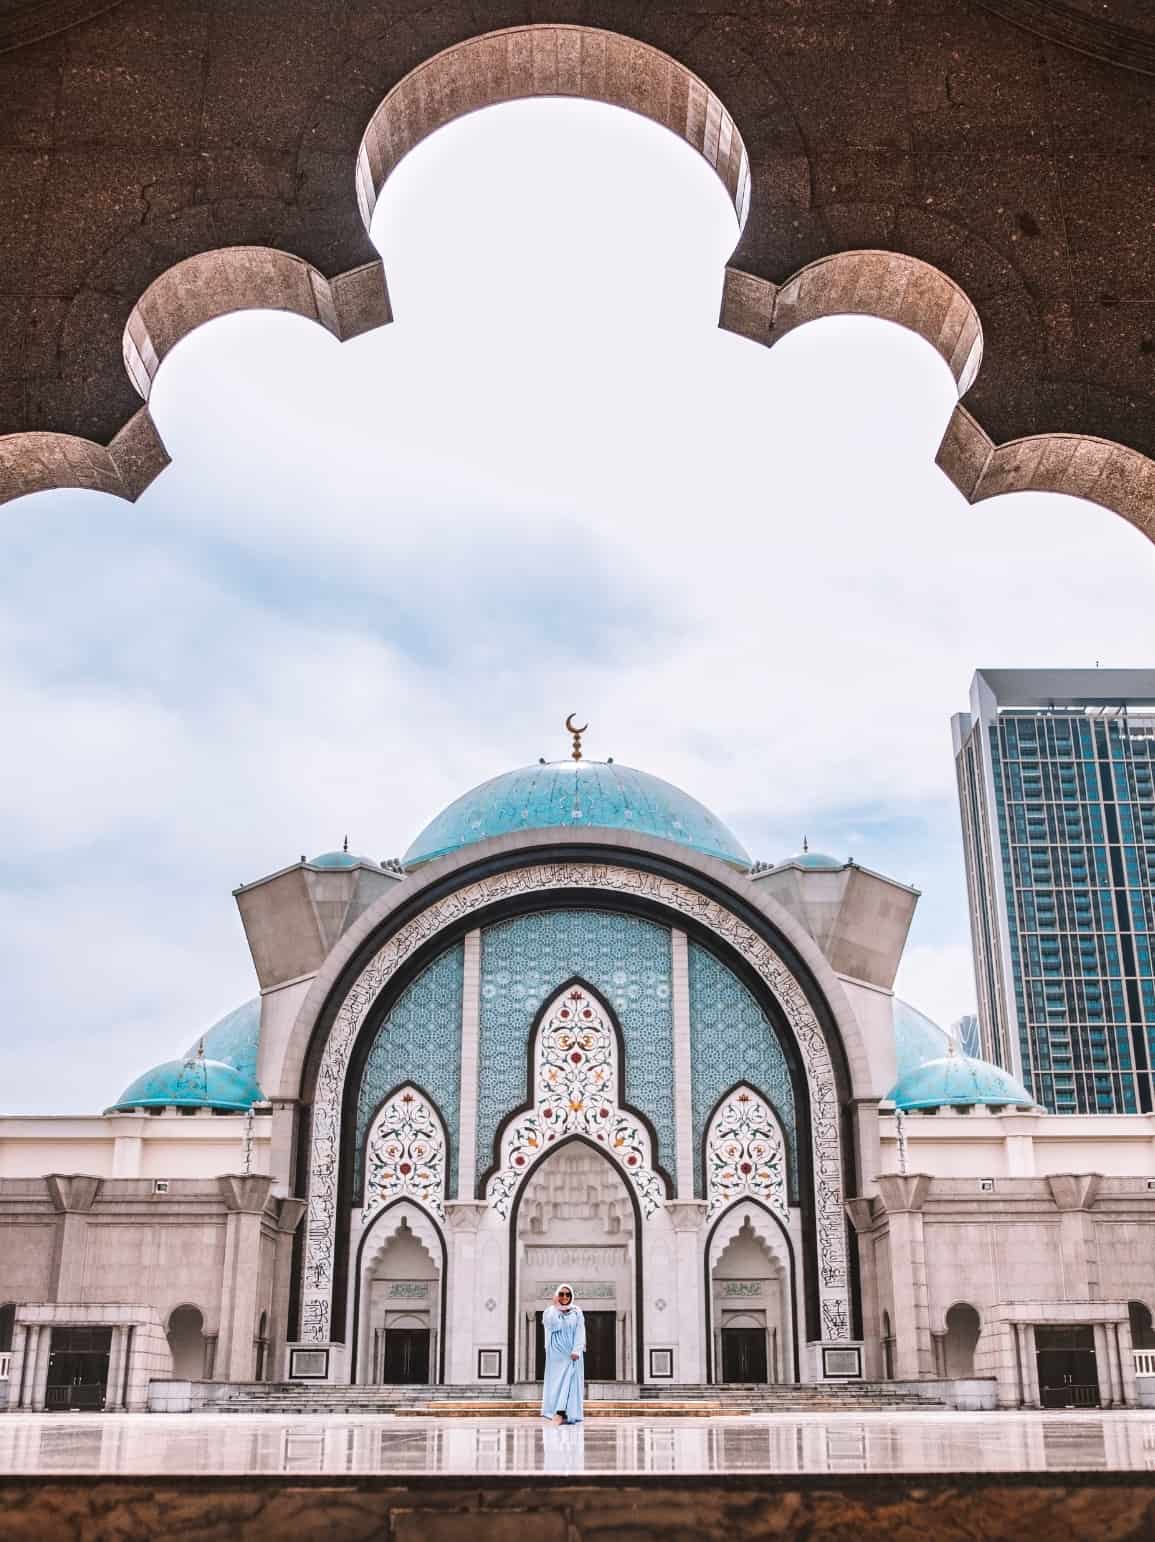 Me touring a beautiful mosque in Kuala Lumpur Malaysia